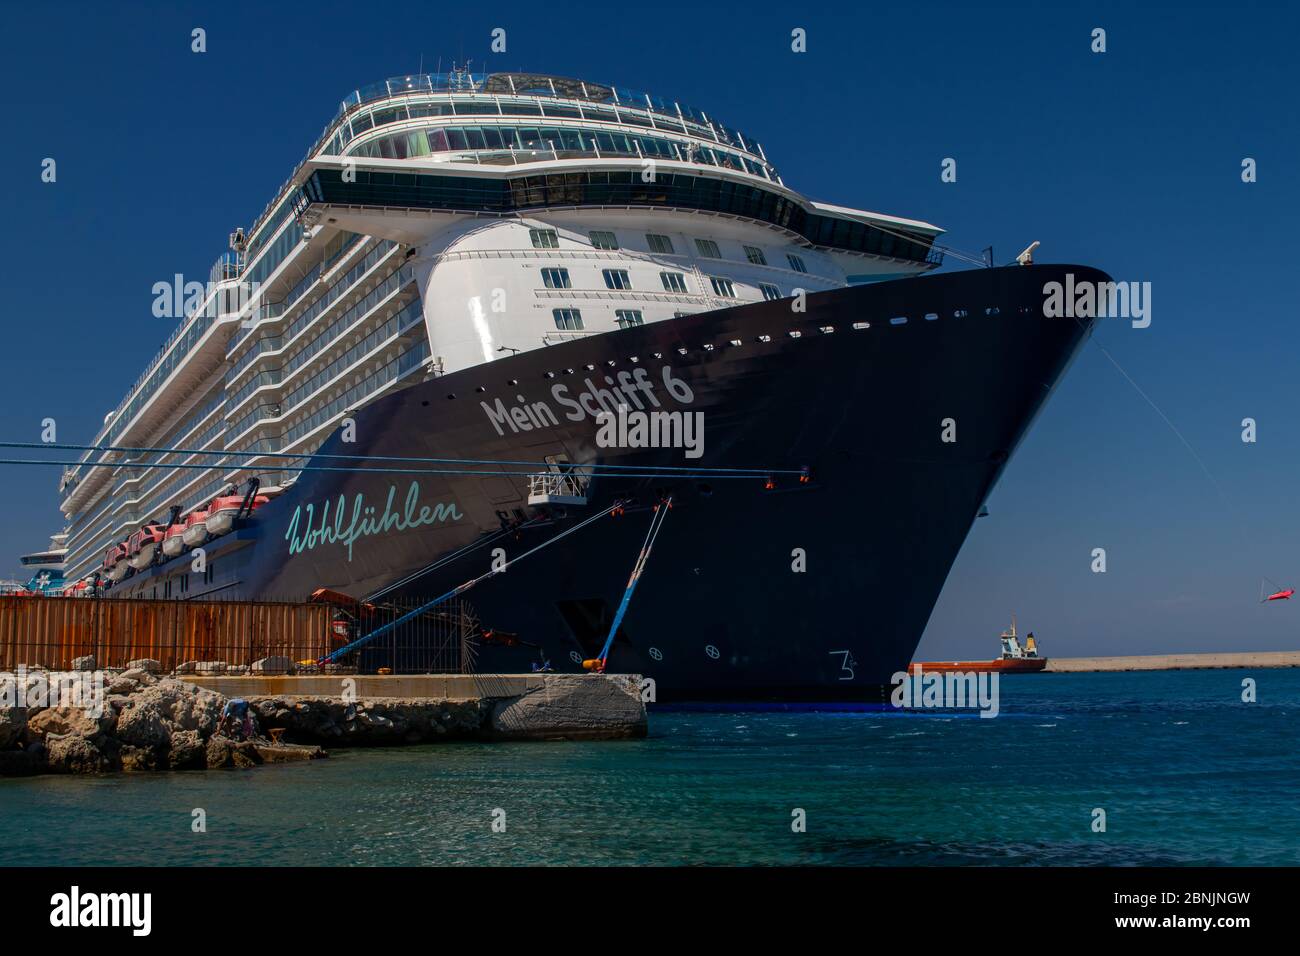 Rhodes, Grèce - 3 juillet 2019: Le bateau de croisière Mein Schiff 6 de la compagnie maritime TUI Cruises GmbH amarré dans le port de l'île Rhodes, GRE Banque D'Images